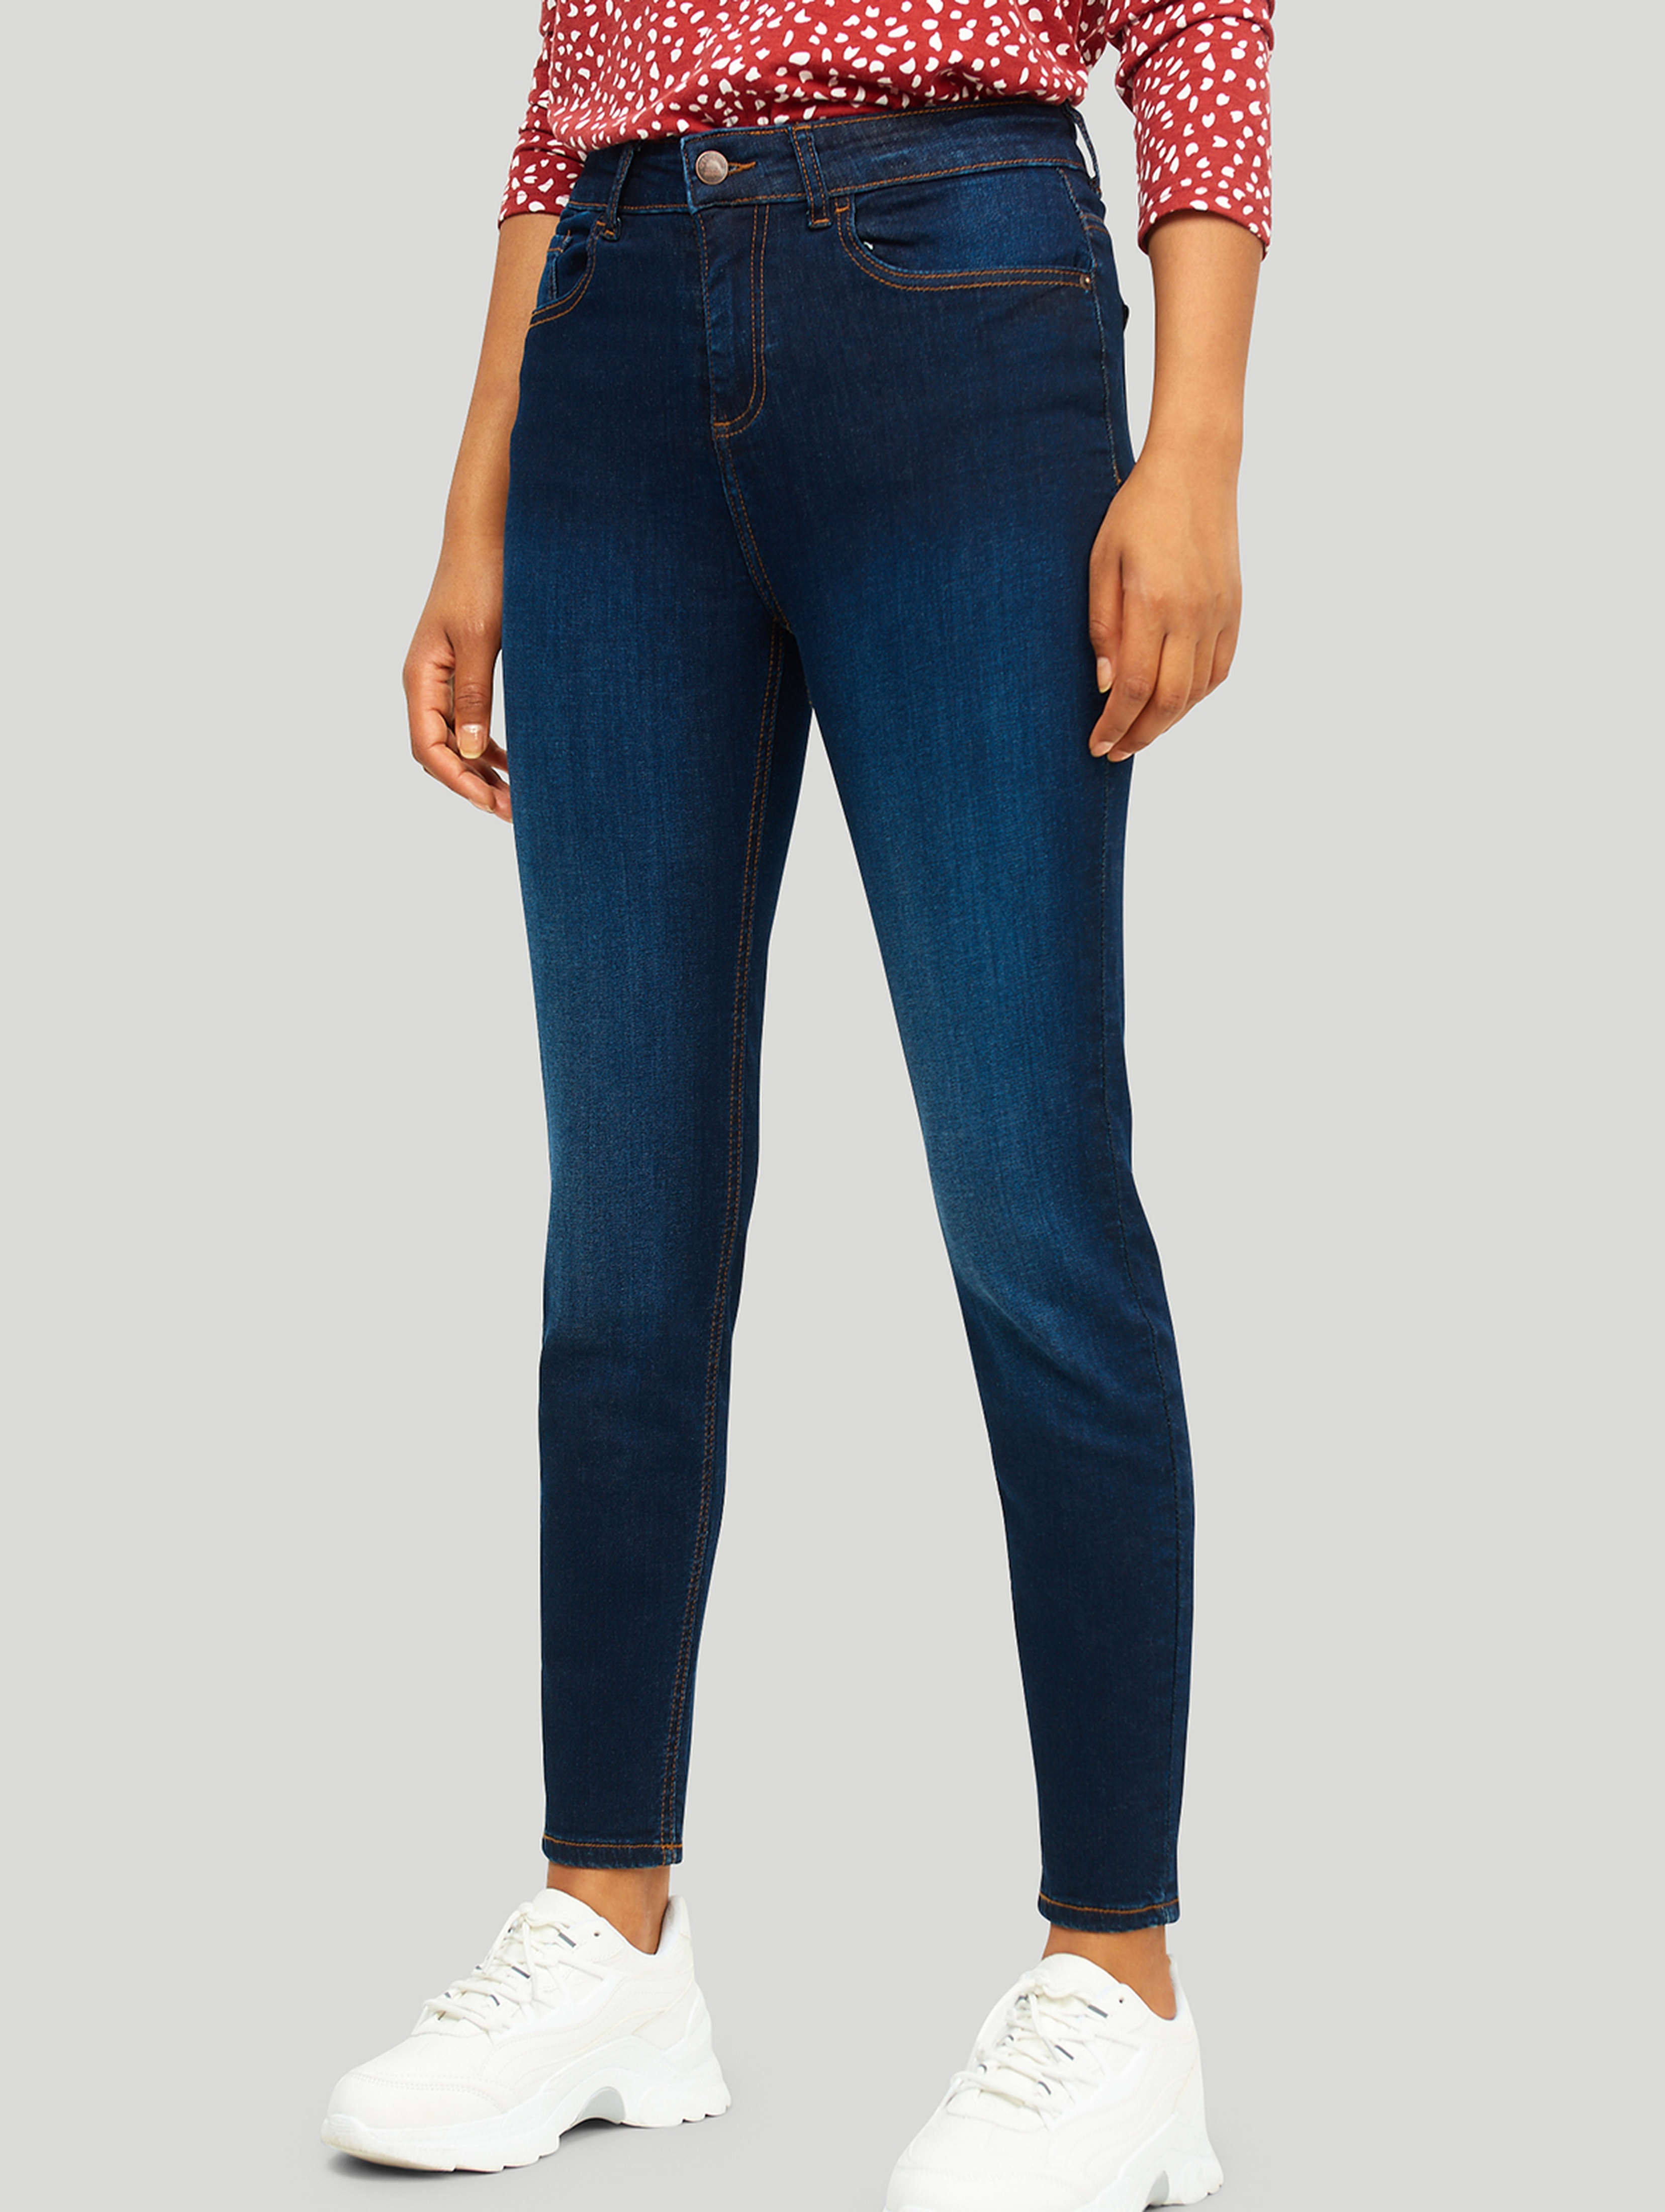 Jeansowe spodnie damskie o kroju slim fit